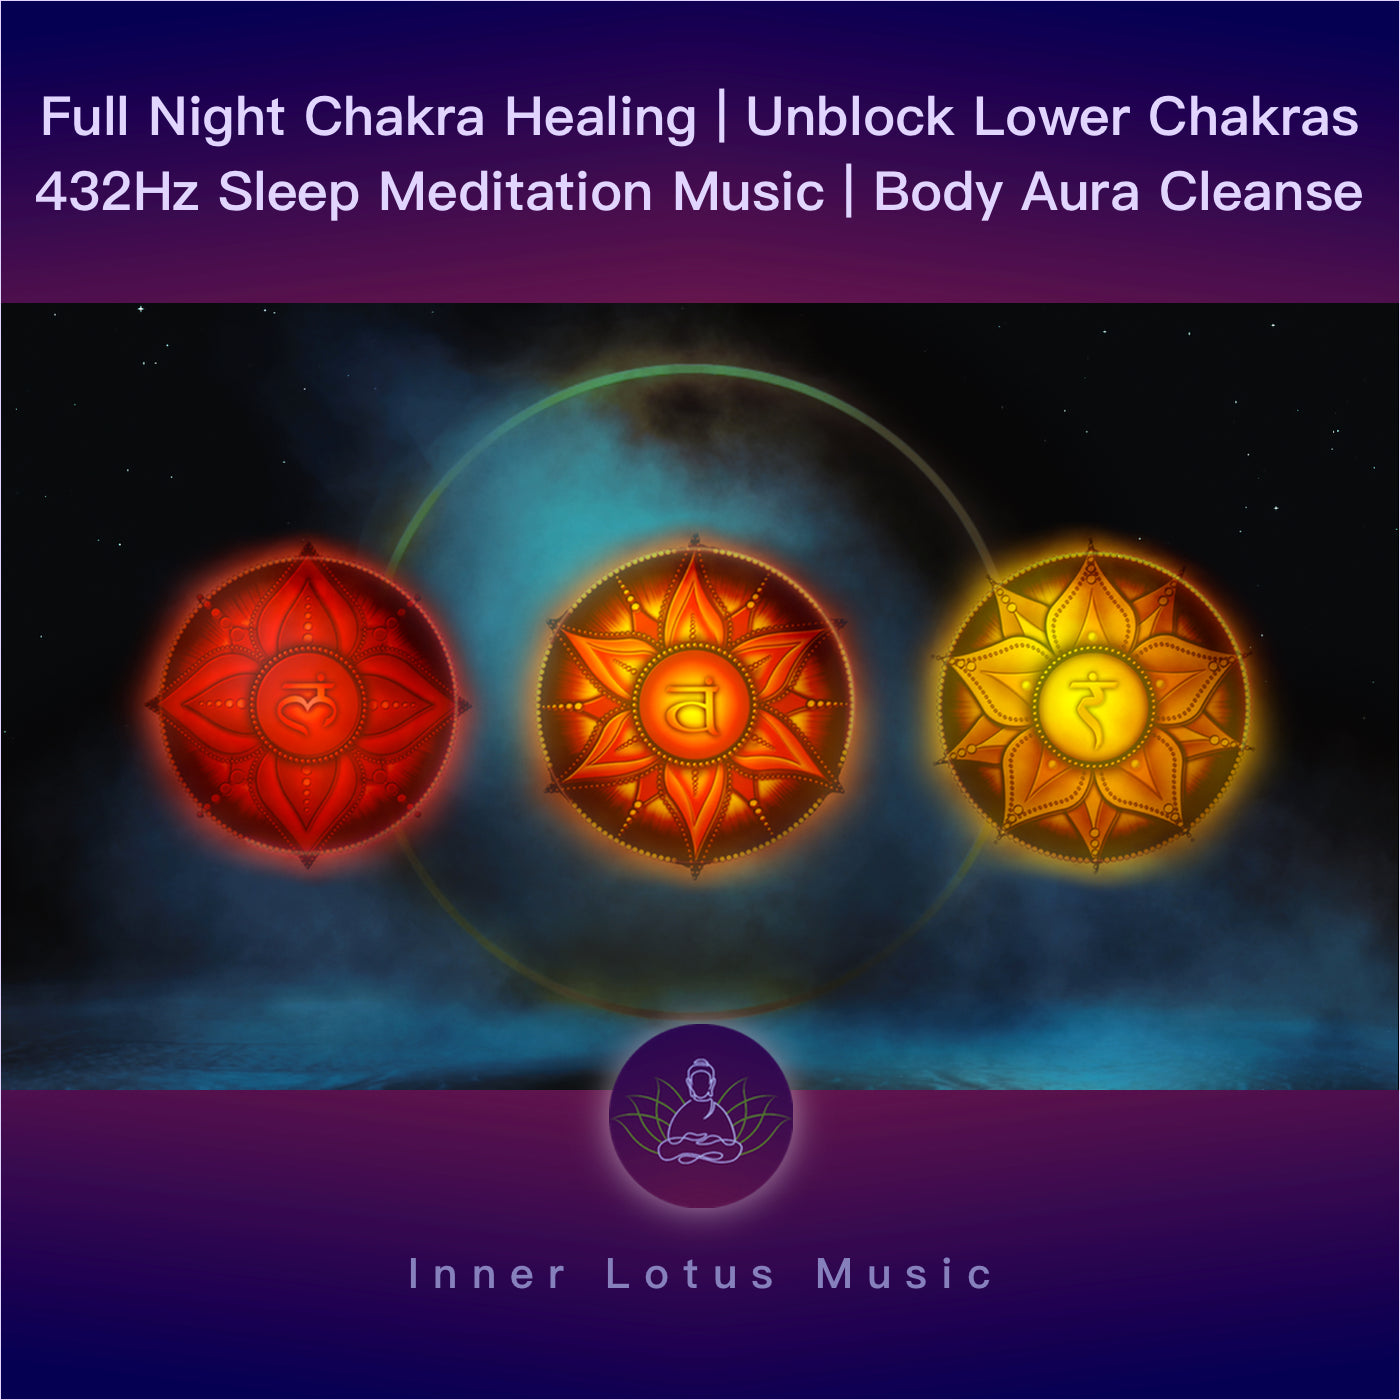 Öffne Deine Unteren Chakren | Chakra Heilung & Blockaden Lösen | 432 Hz Schlaf- & Meditationsmusik